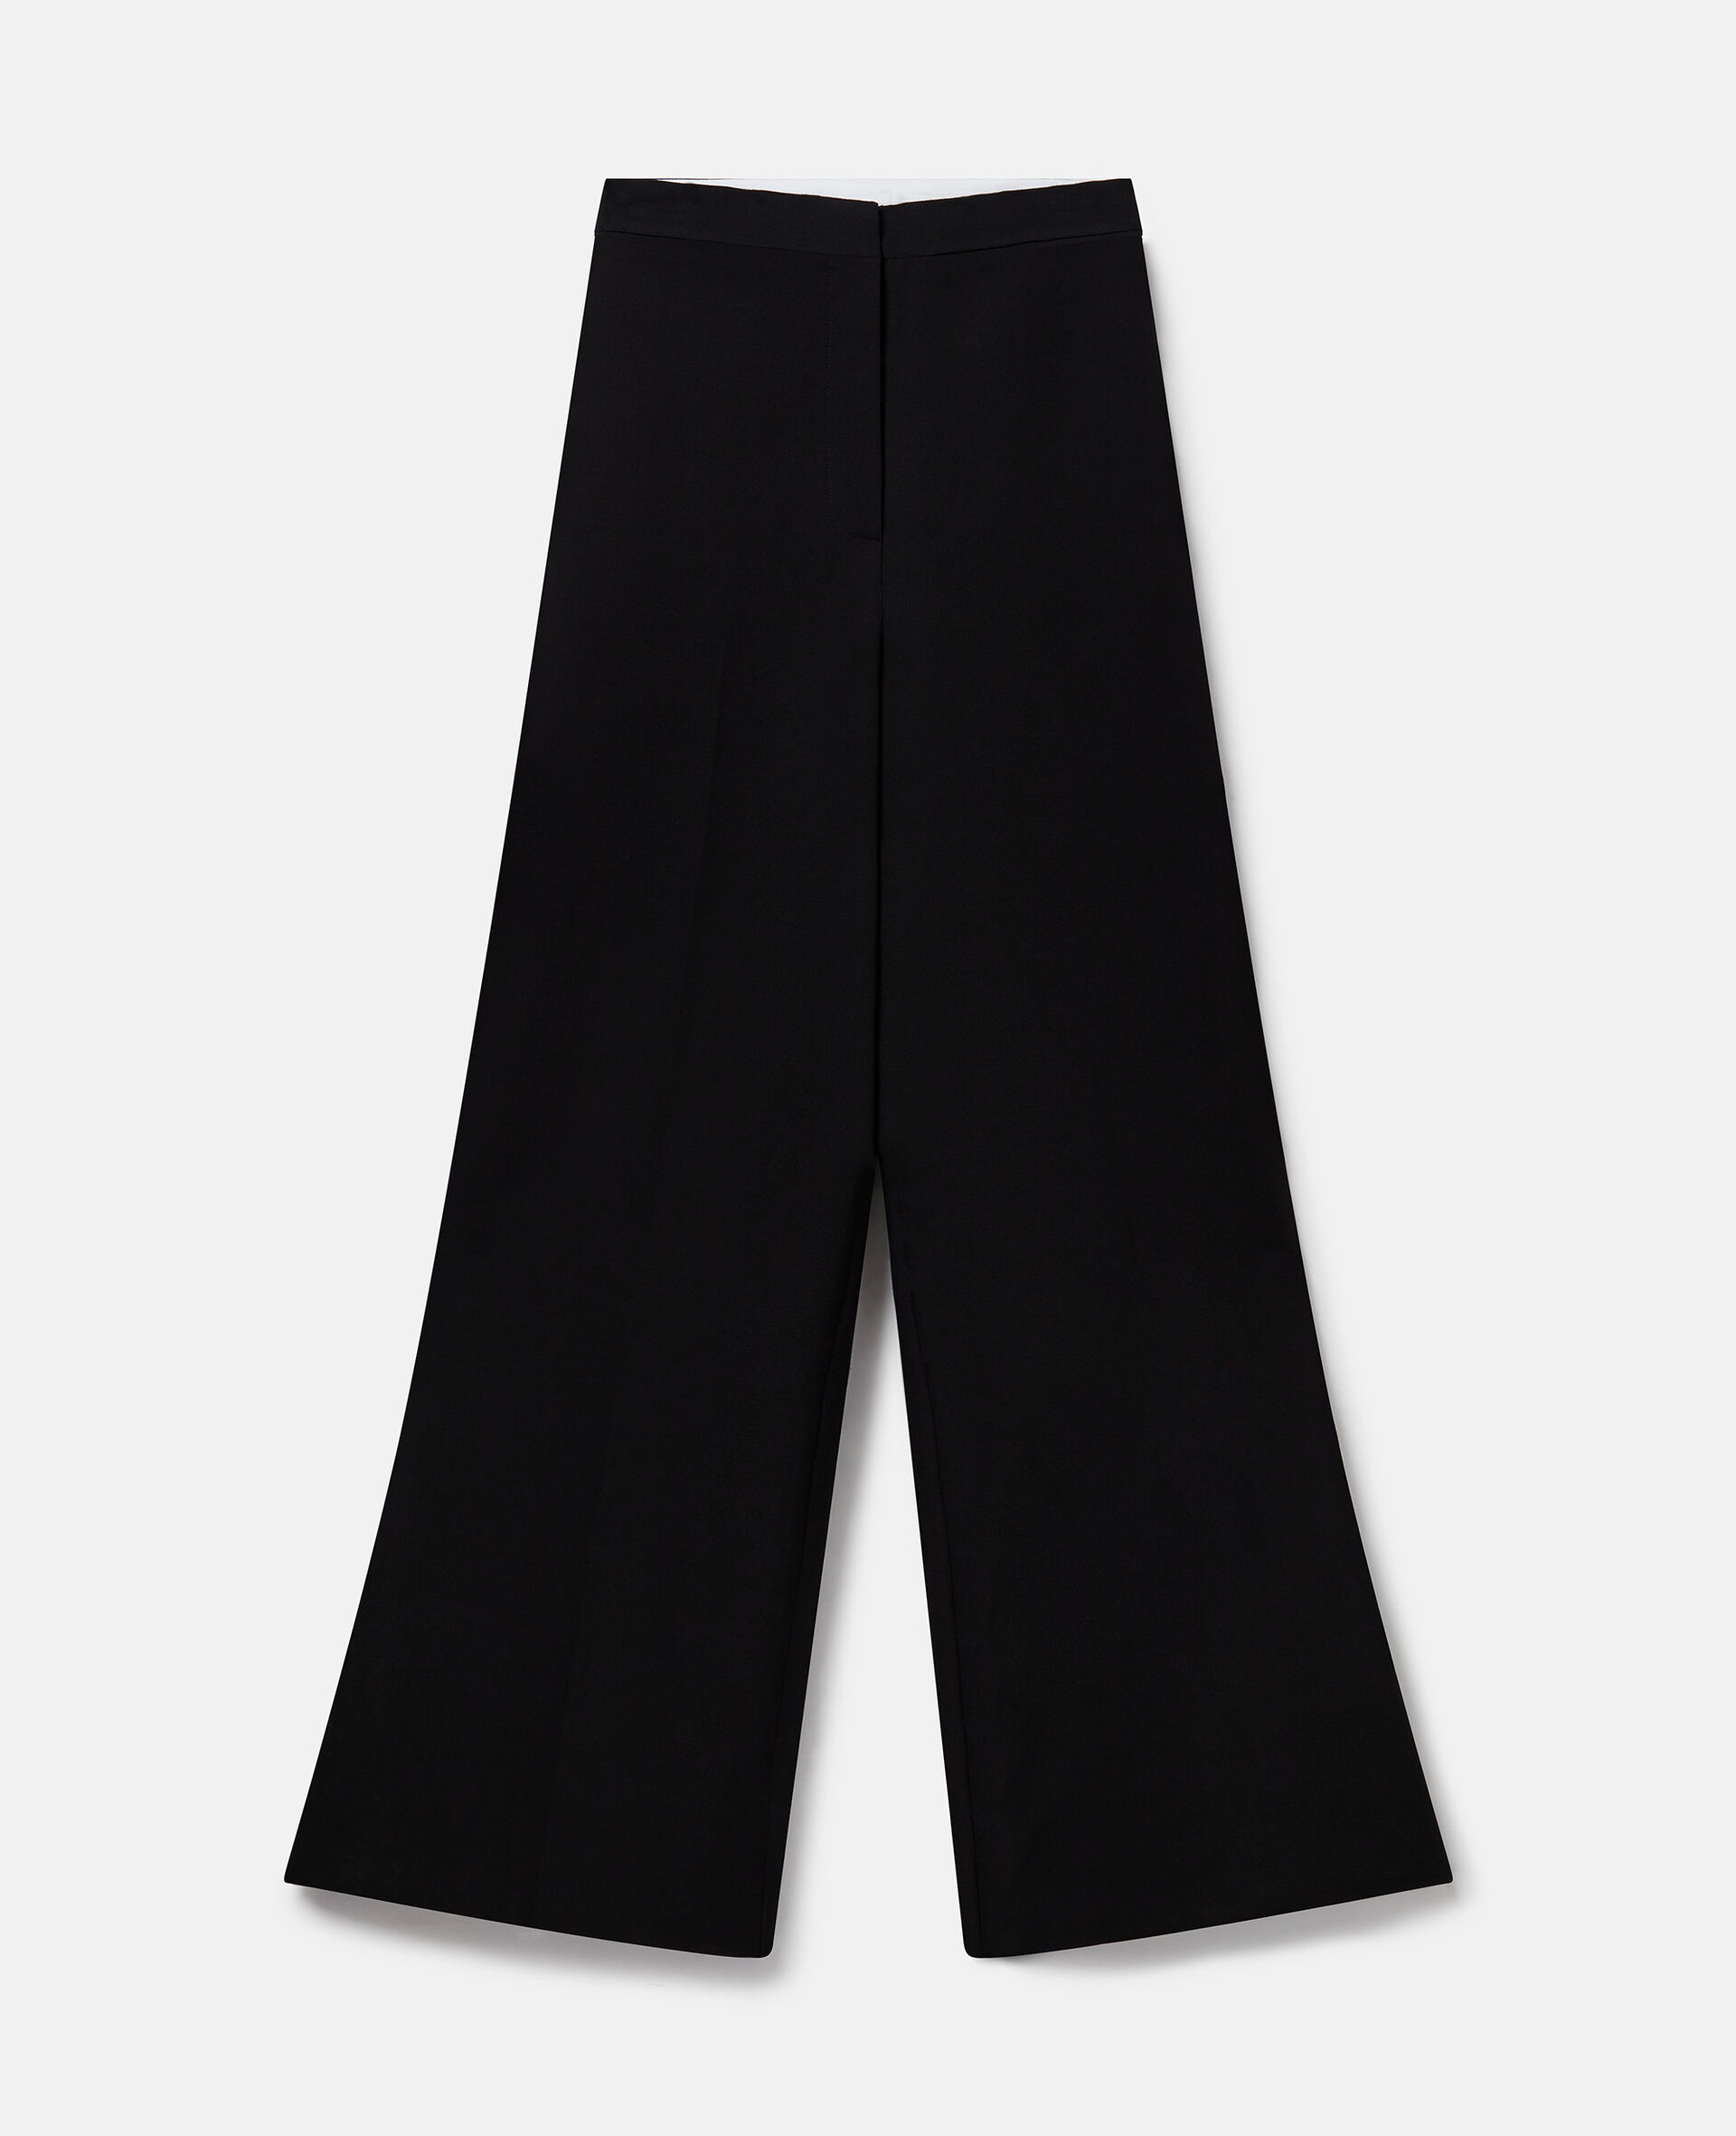 Hose aus Wolle mit Falten, hohem Bund und weitem Hosenbein-Schwarz-medium